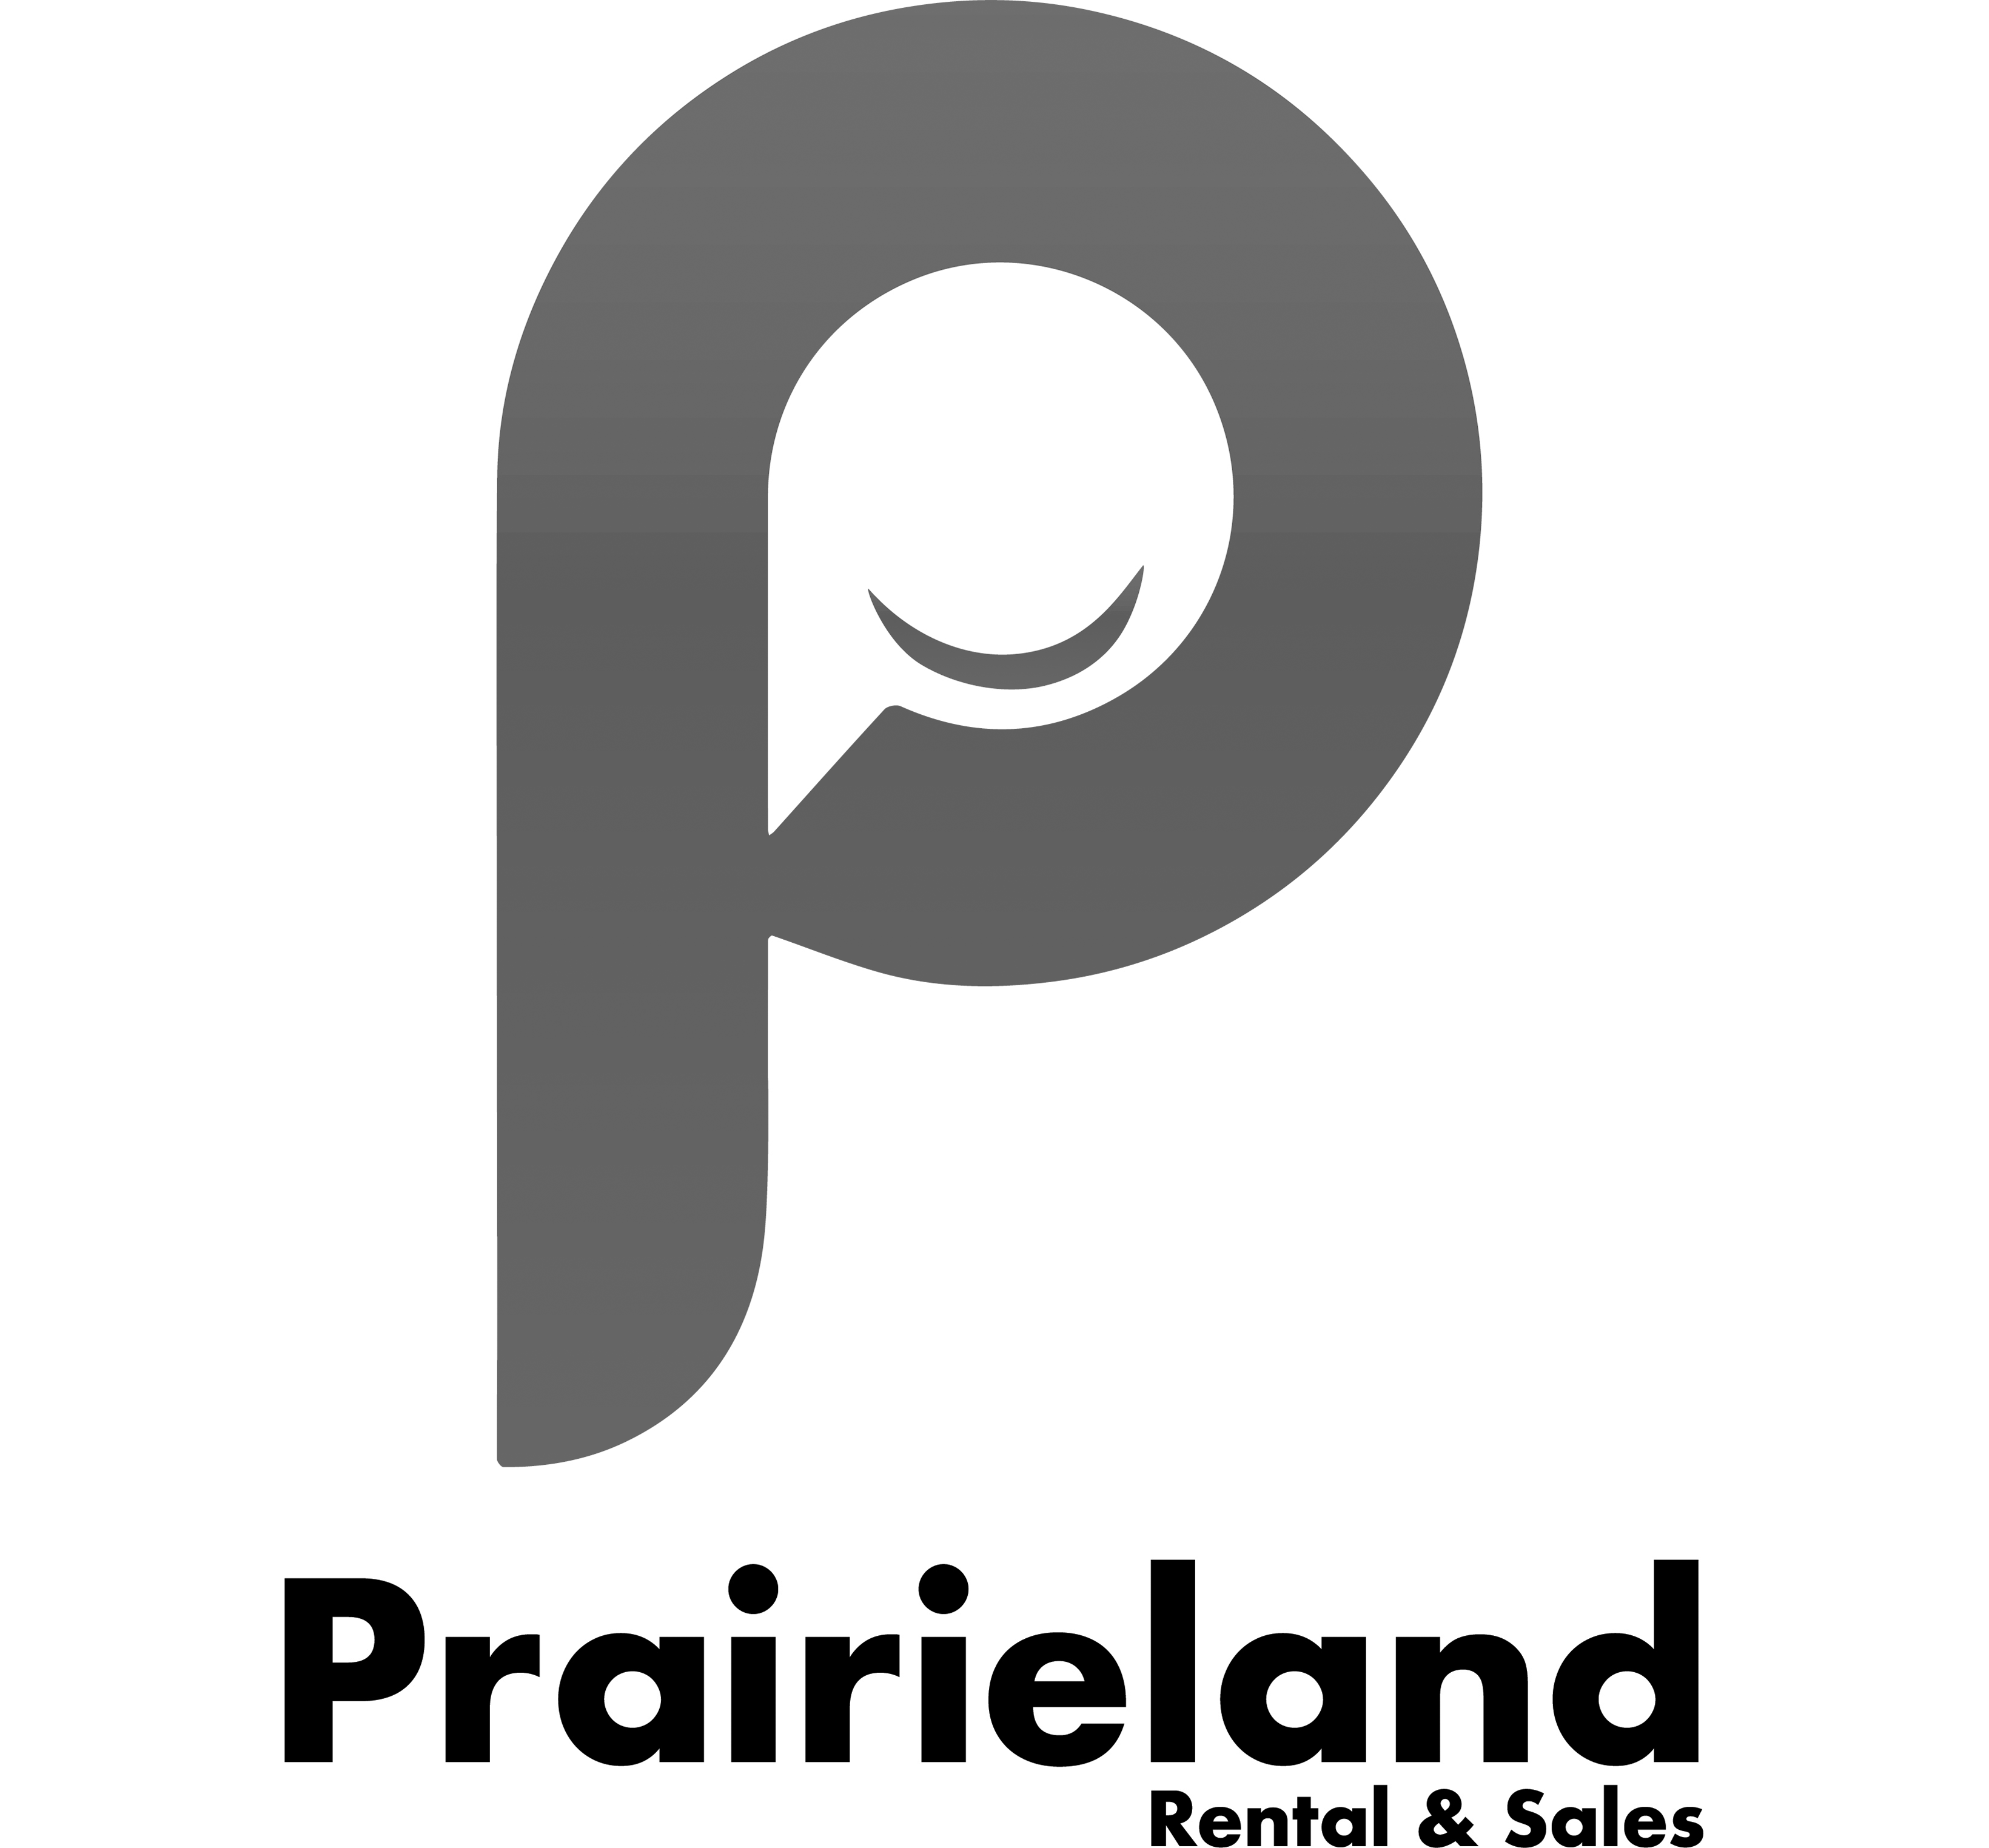 Prairieland Rentals and Sales